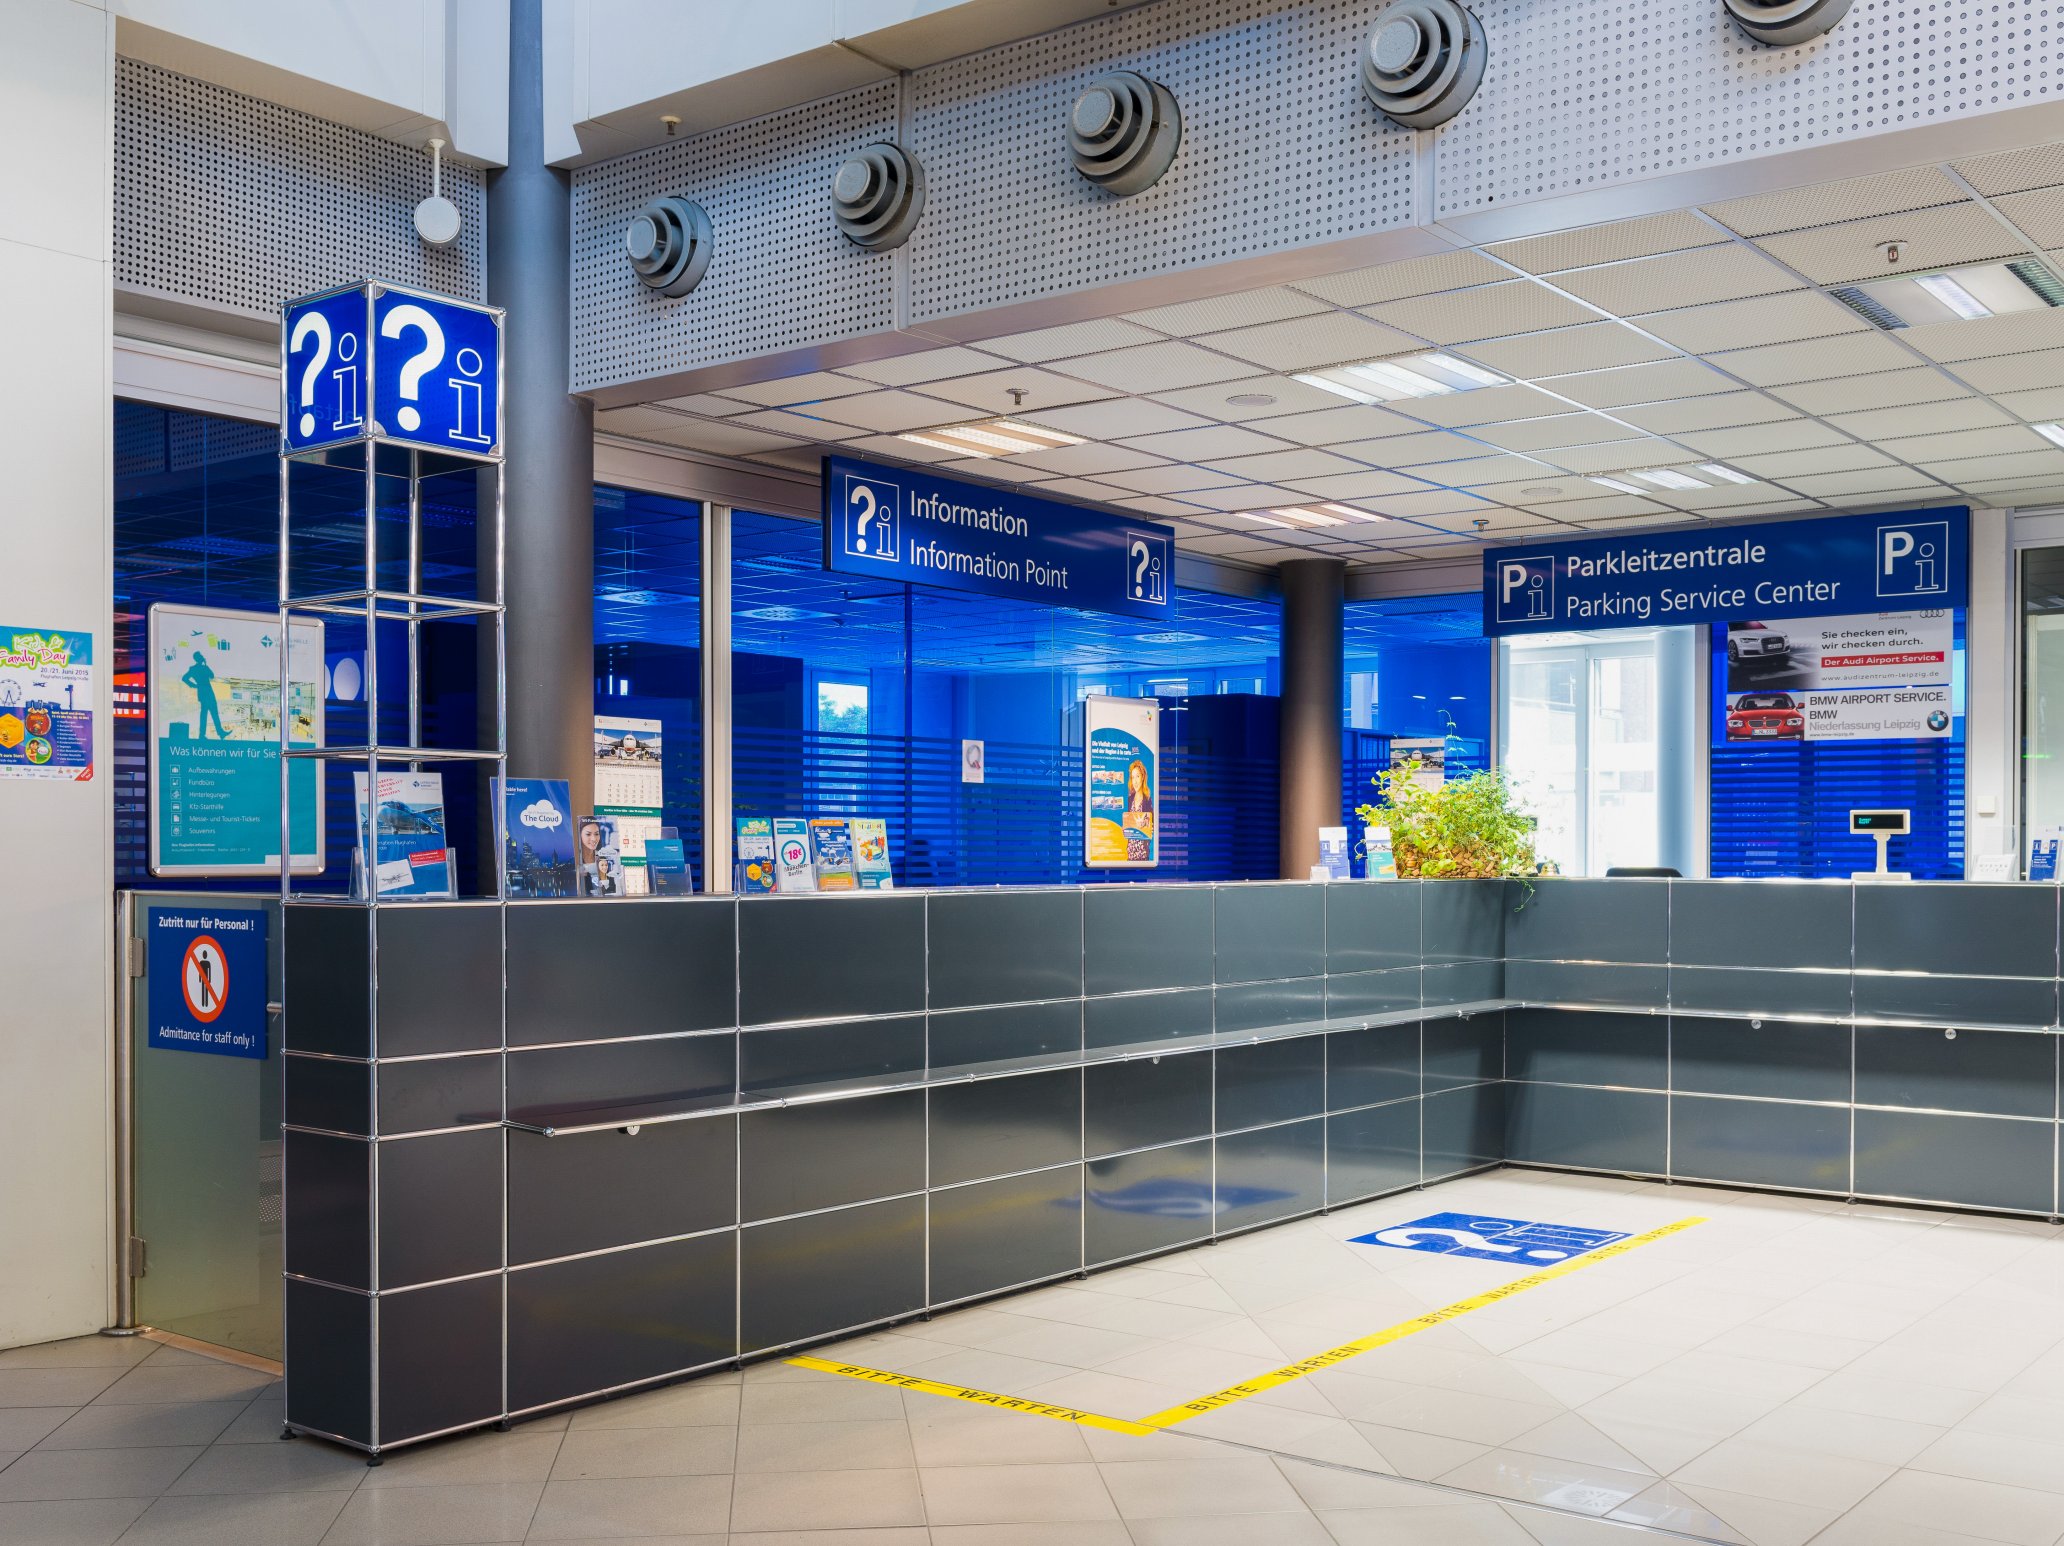 USM Airport Halle-Leipzig – point information